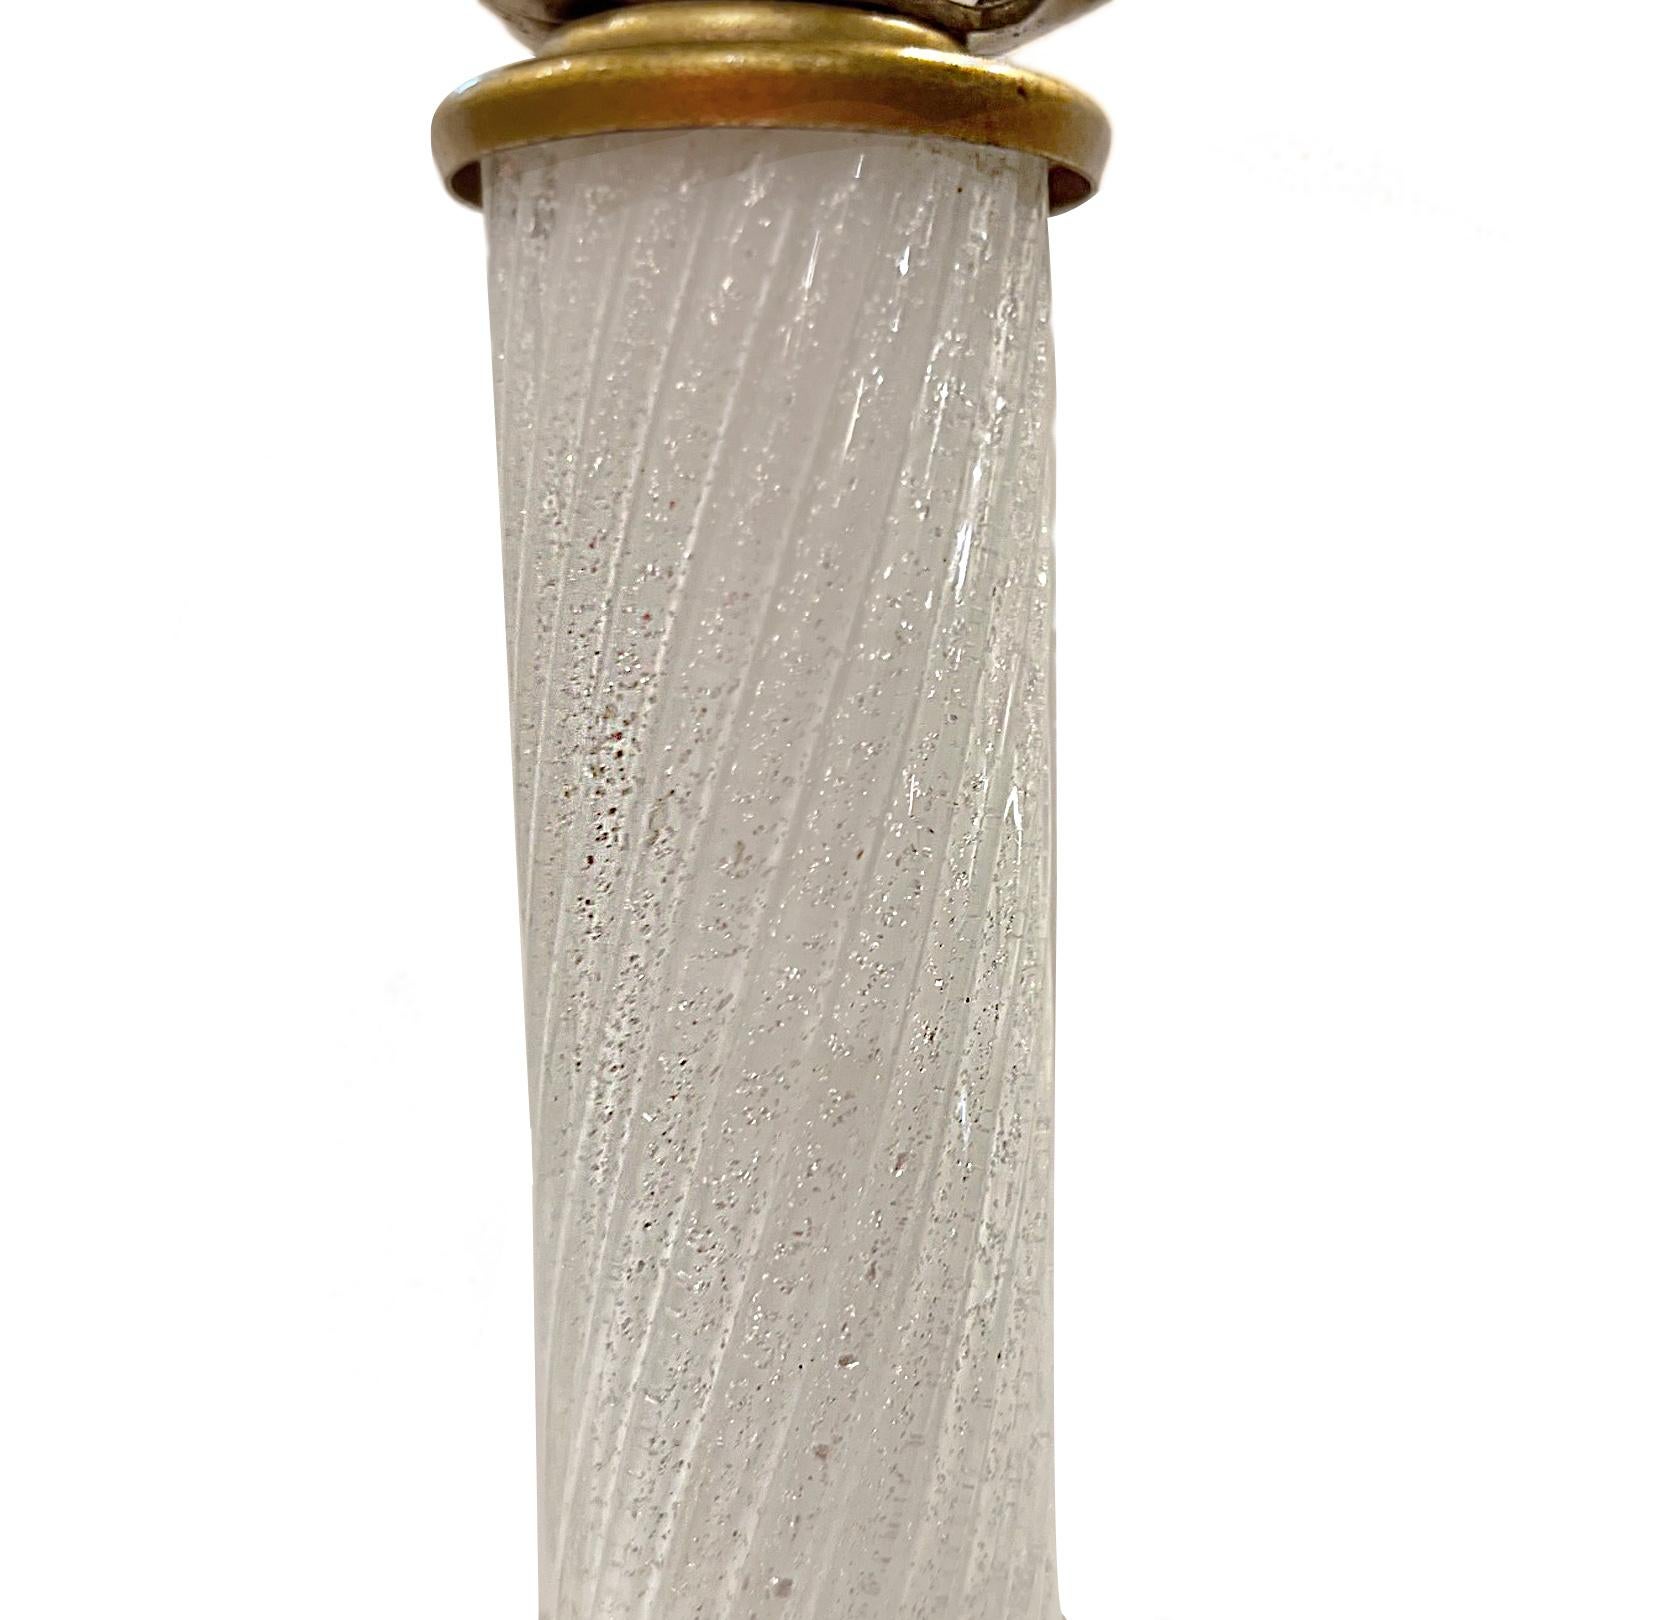 Paire de lampes en verre soufflé blanc de Murano datant des années 1930, avec des fleurs en verre rose appliquées et des mouchetures argentées dans le verre blanc.

Mesures :
Hauteur du corps : 17
Diamètre : 6.5